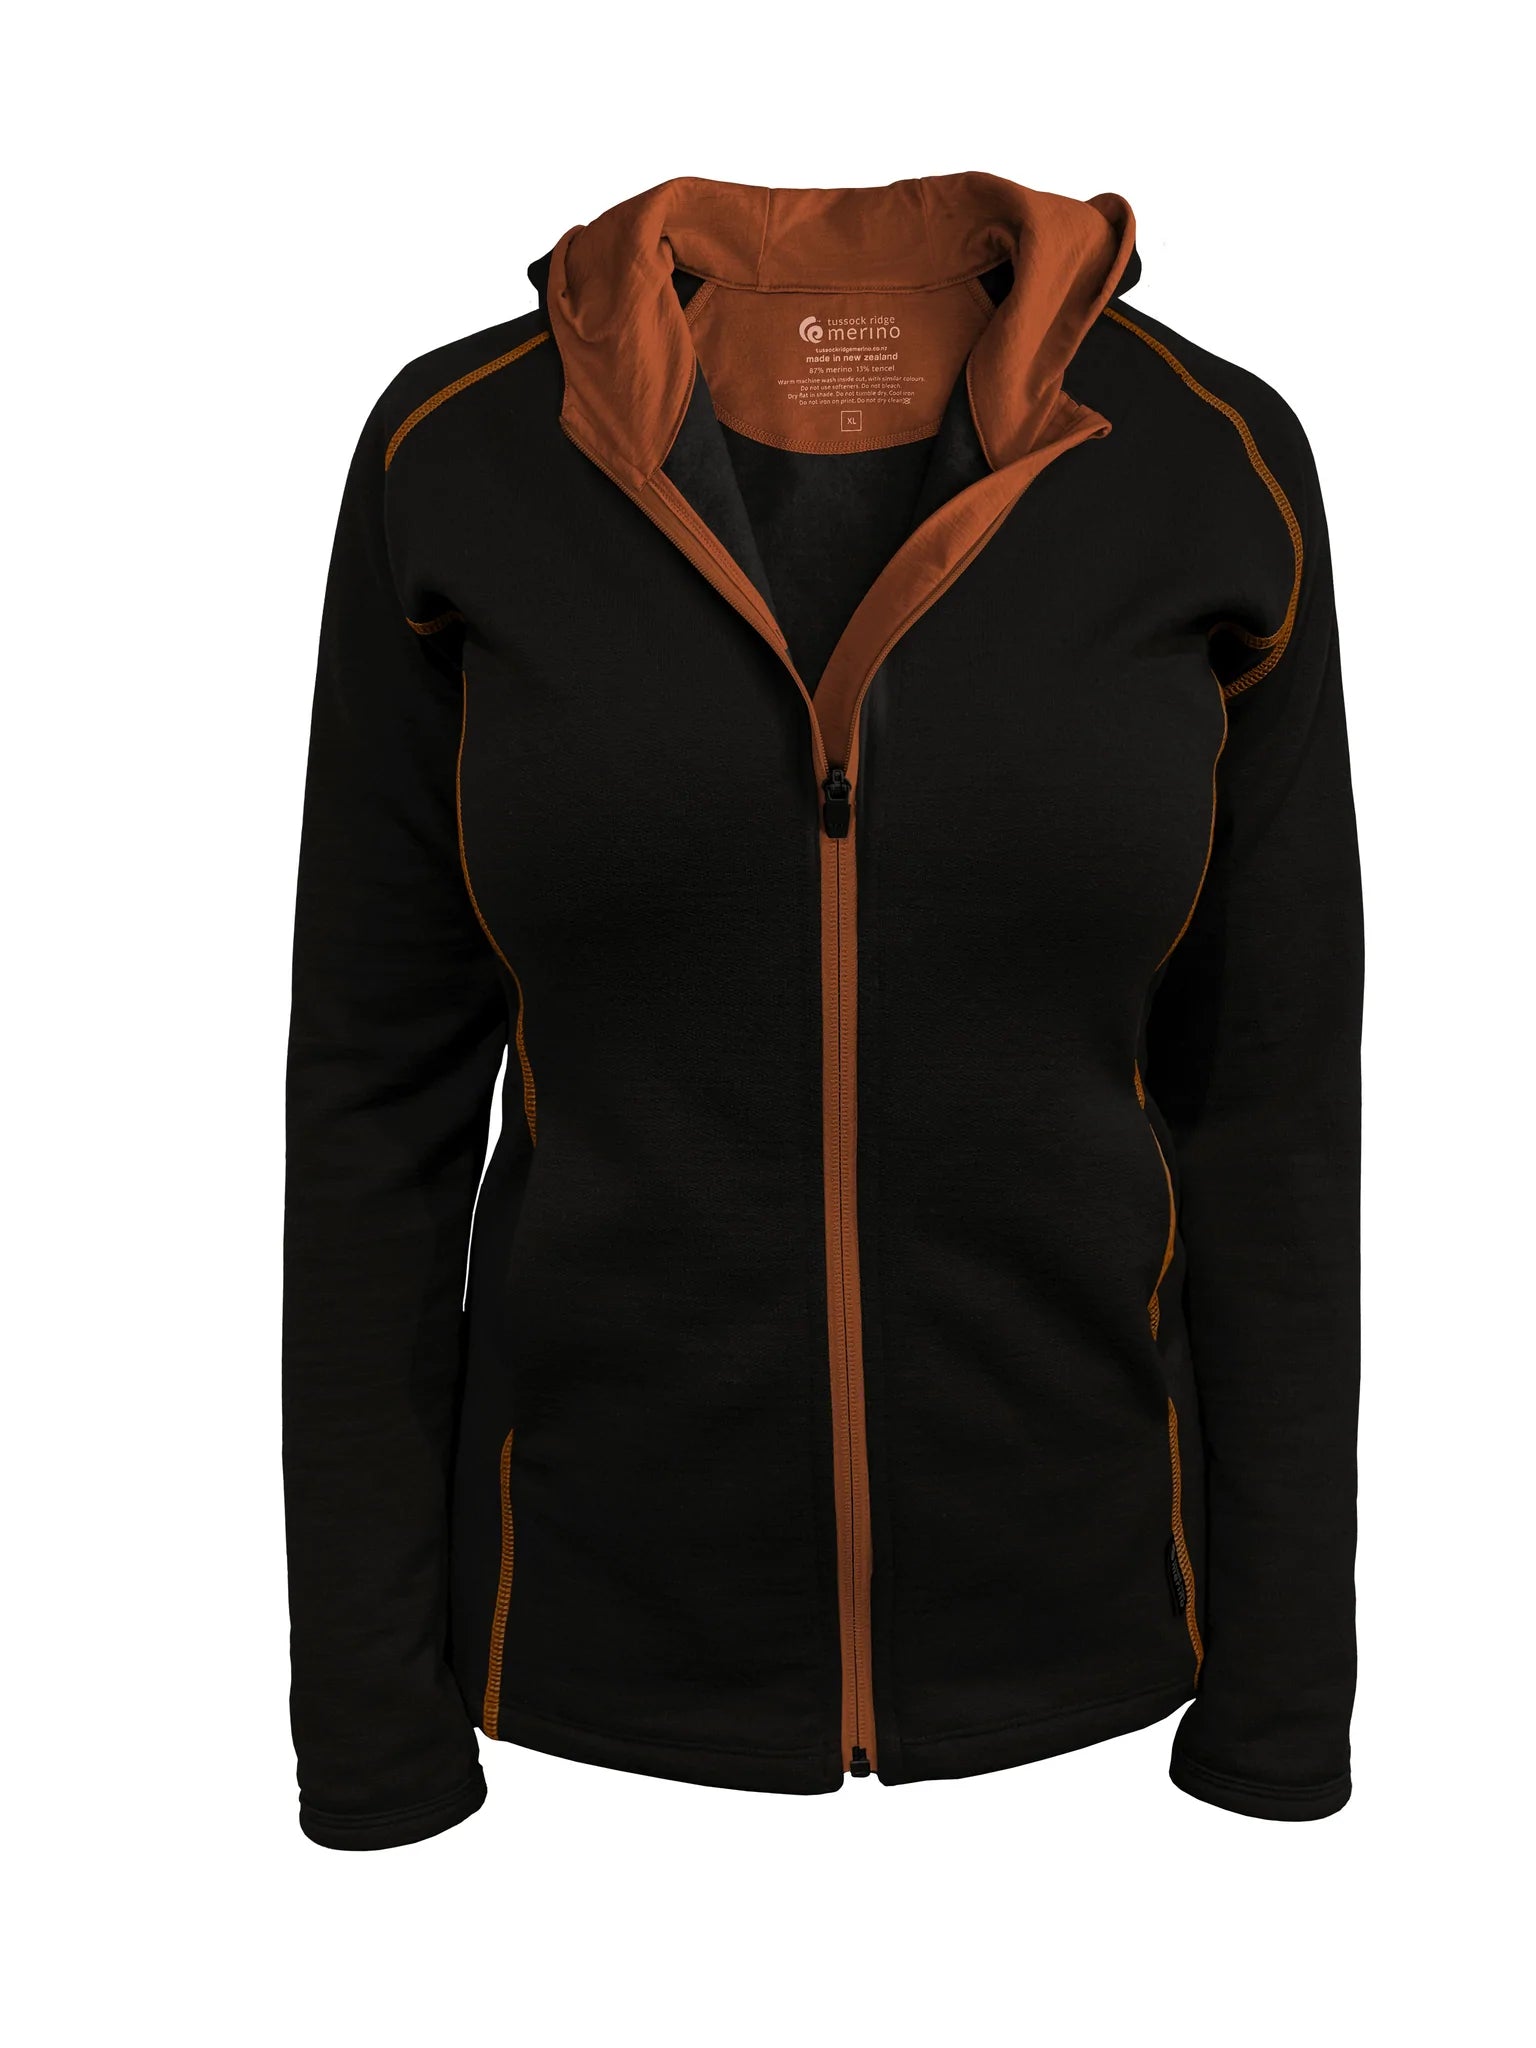 Ladies Merino/Tencel Full Zip Jacket with Hood. Made in New Zealand